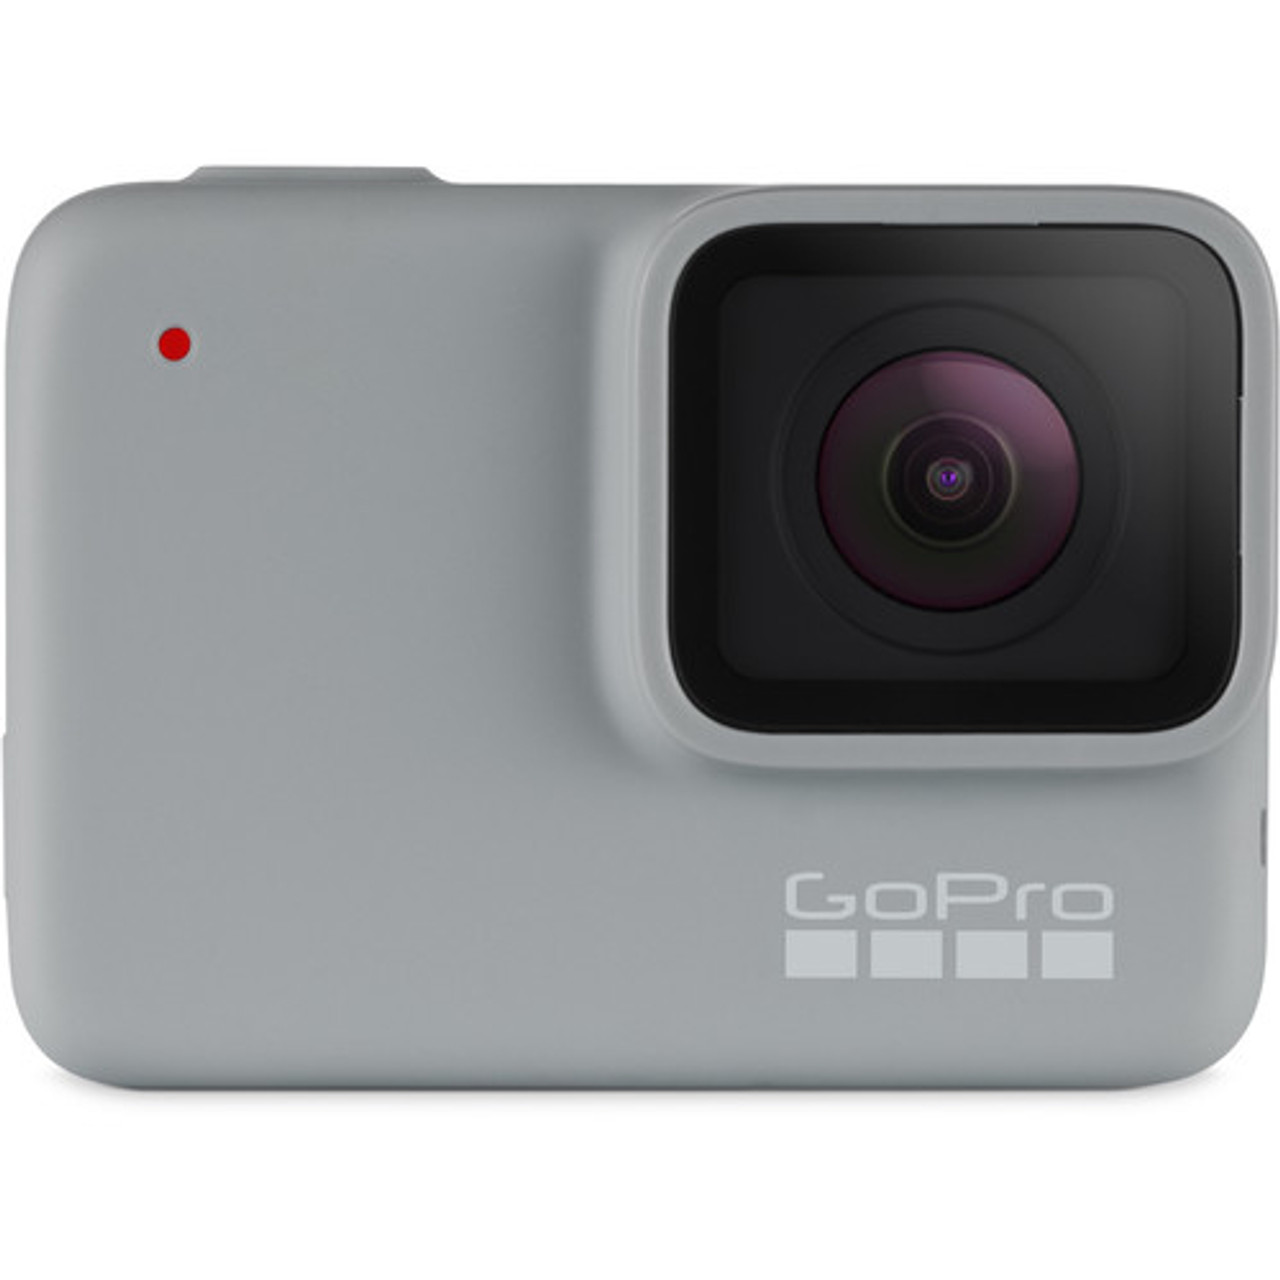 GoPro HERO (2018) at Acephoto.net